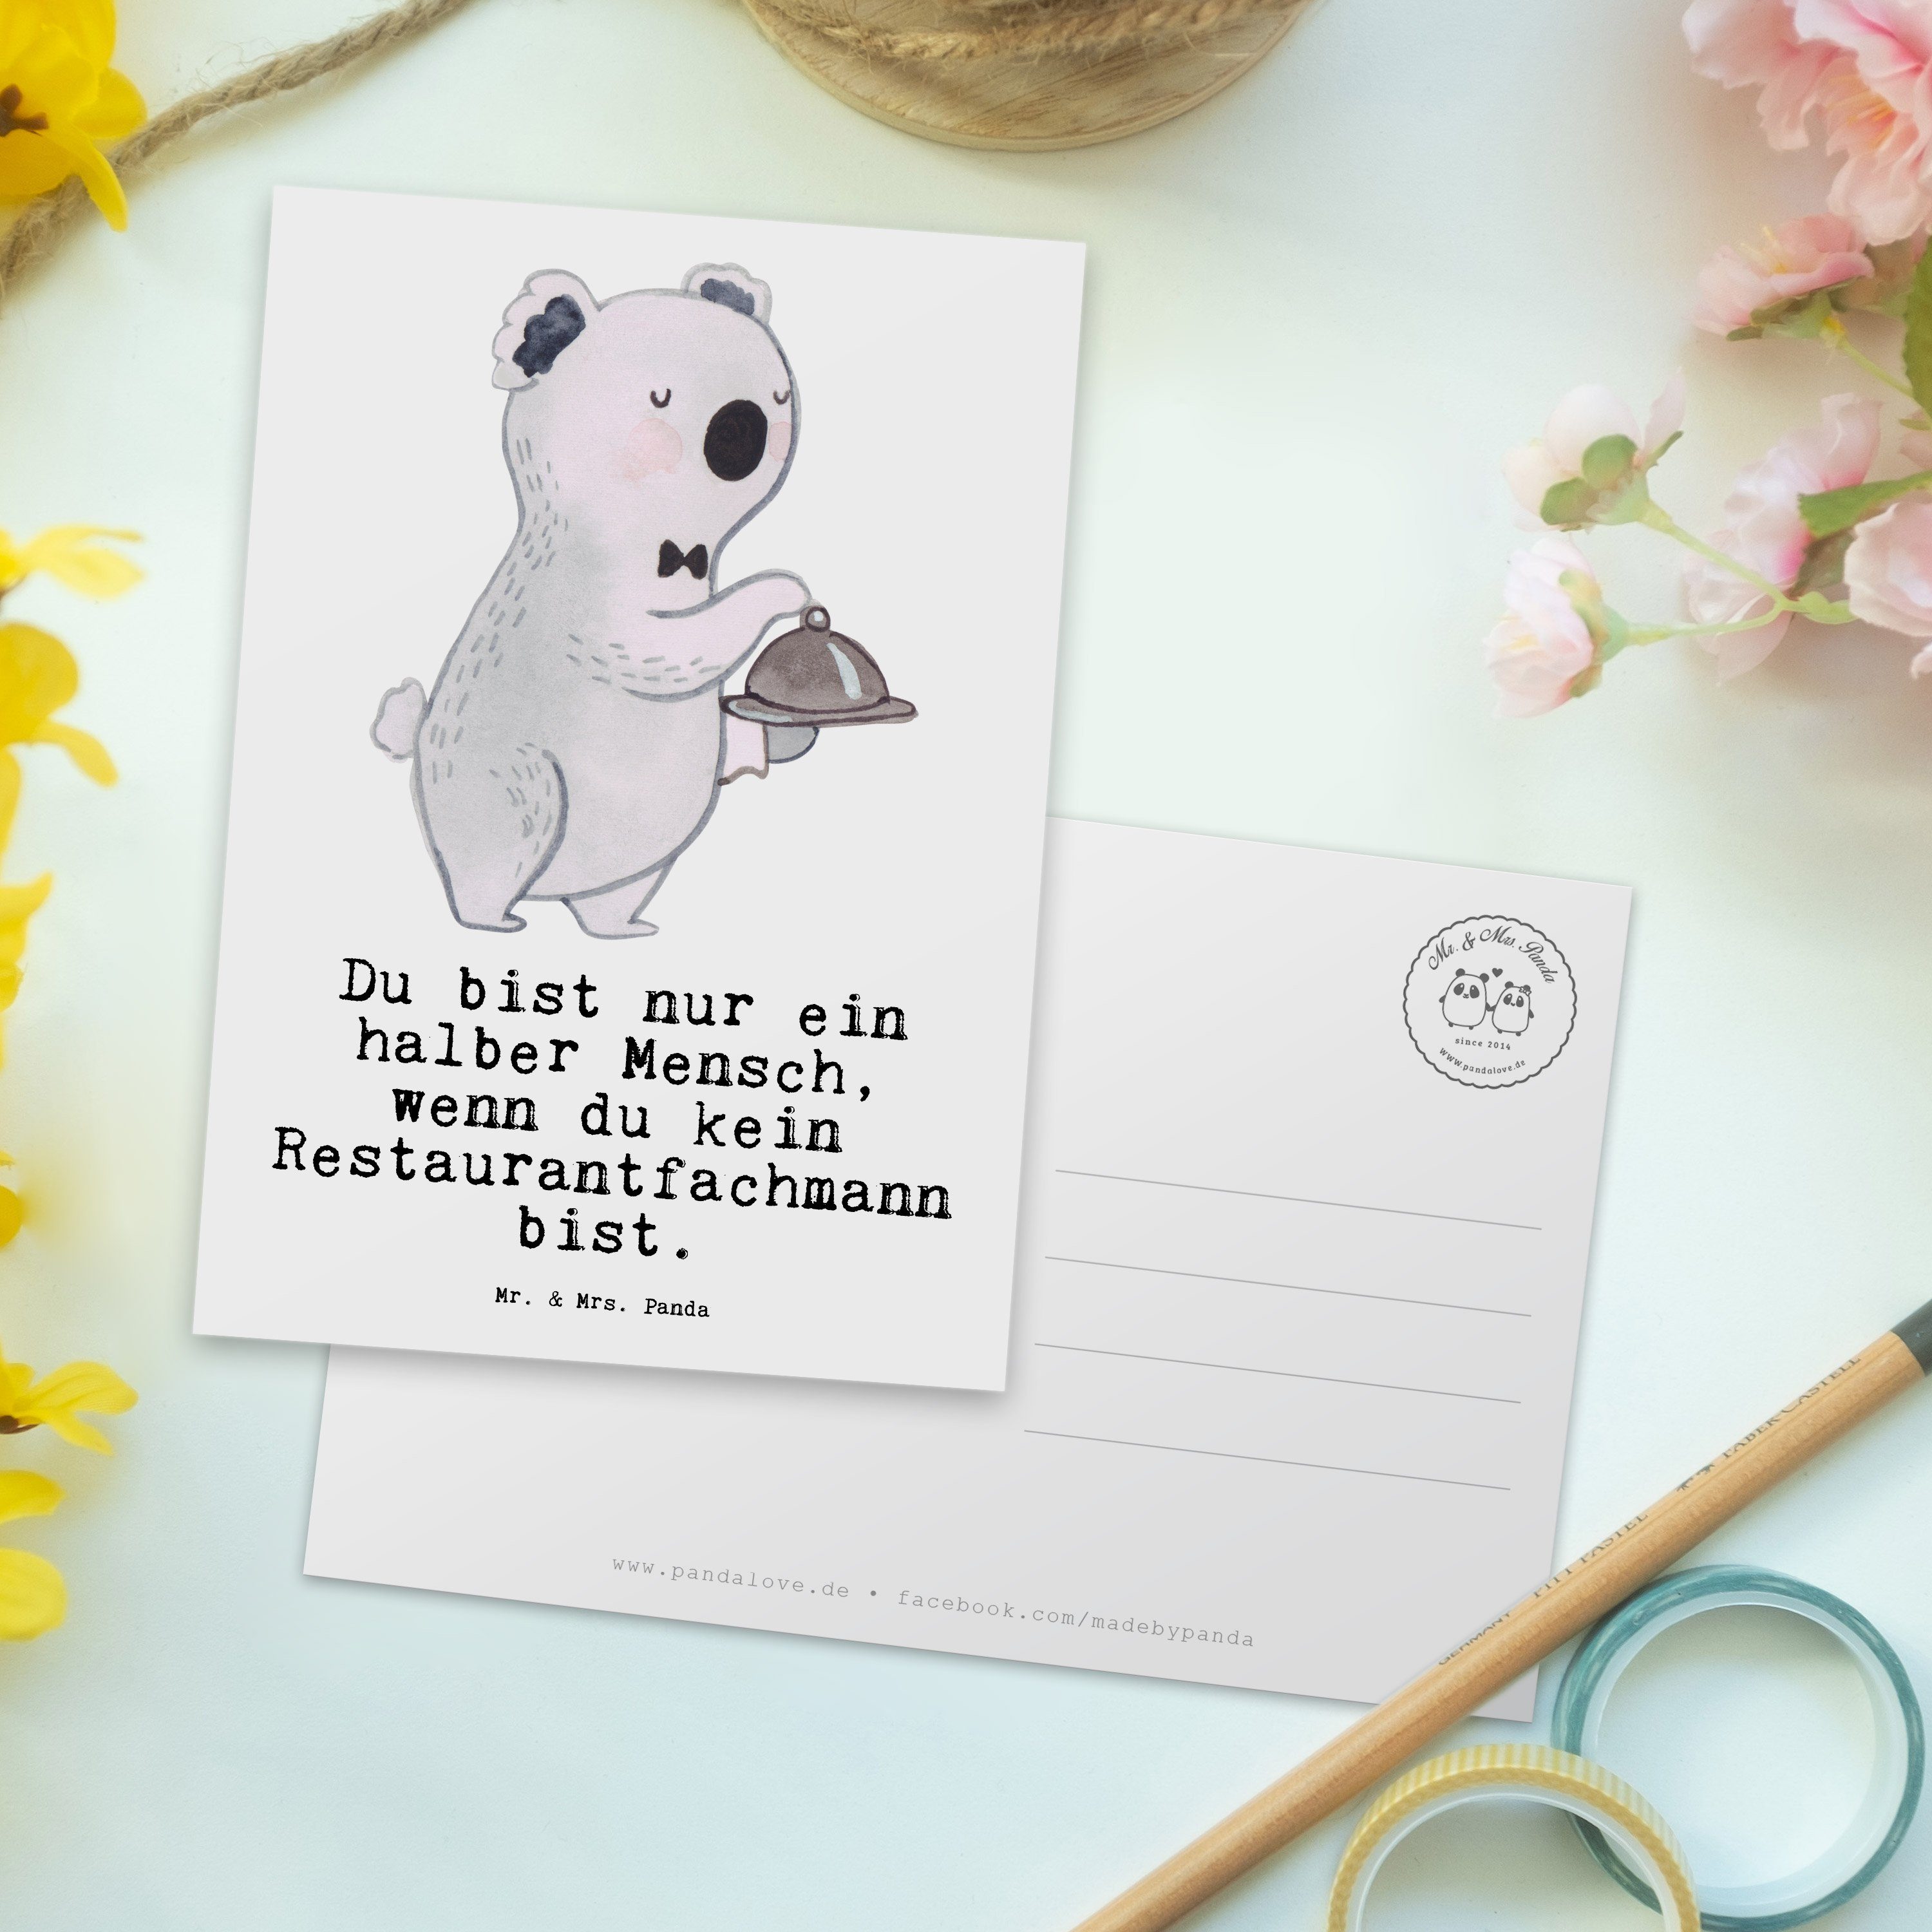 Mr. & Mrs. mit Panda Ausbildung, Geschenk, - Weiß - Restaurantfachmann Postkarte Herz Rente, Gru